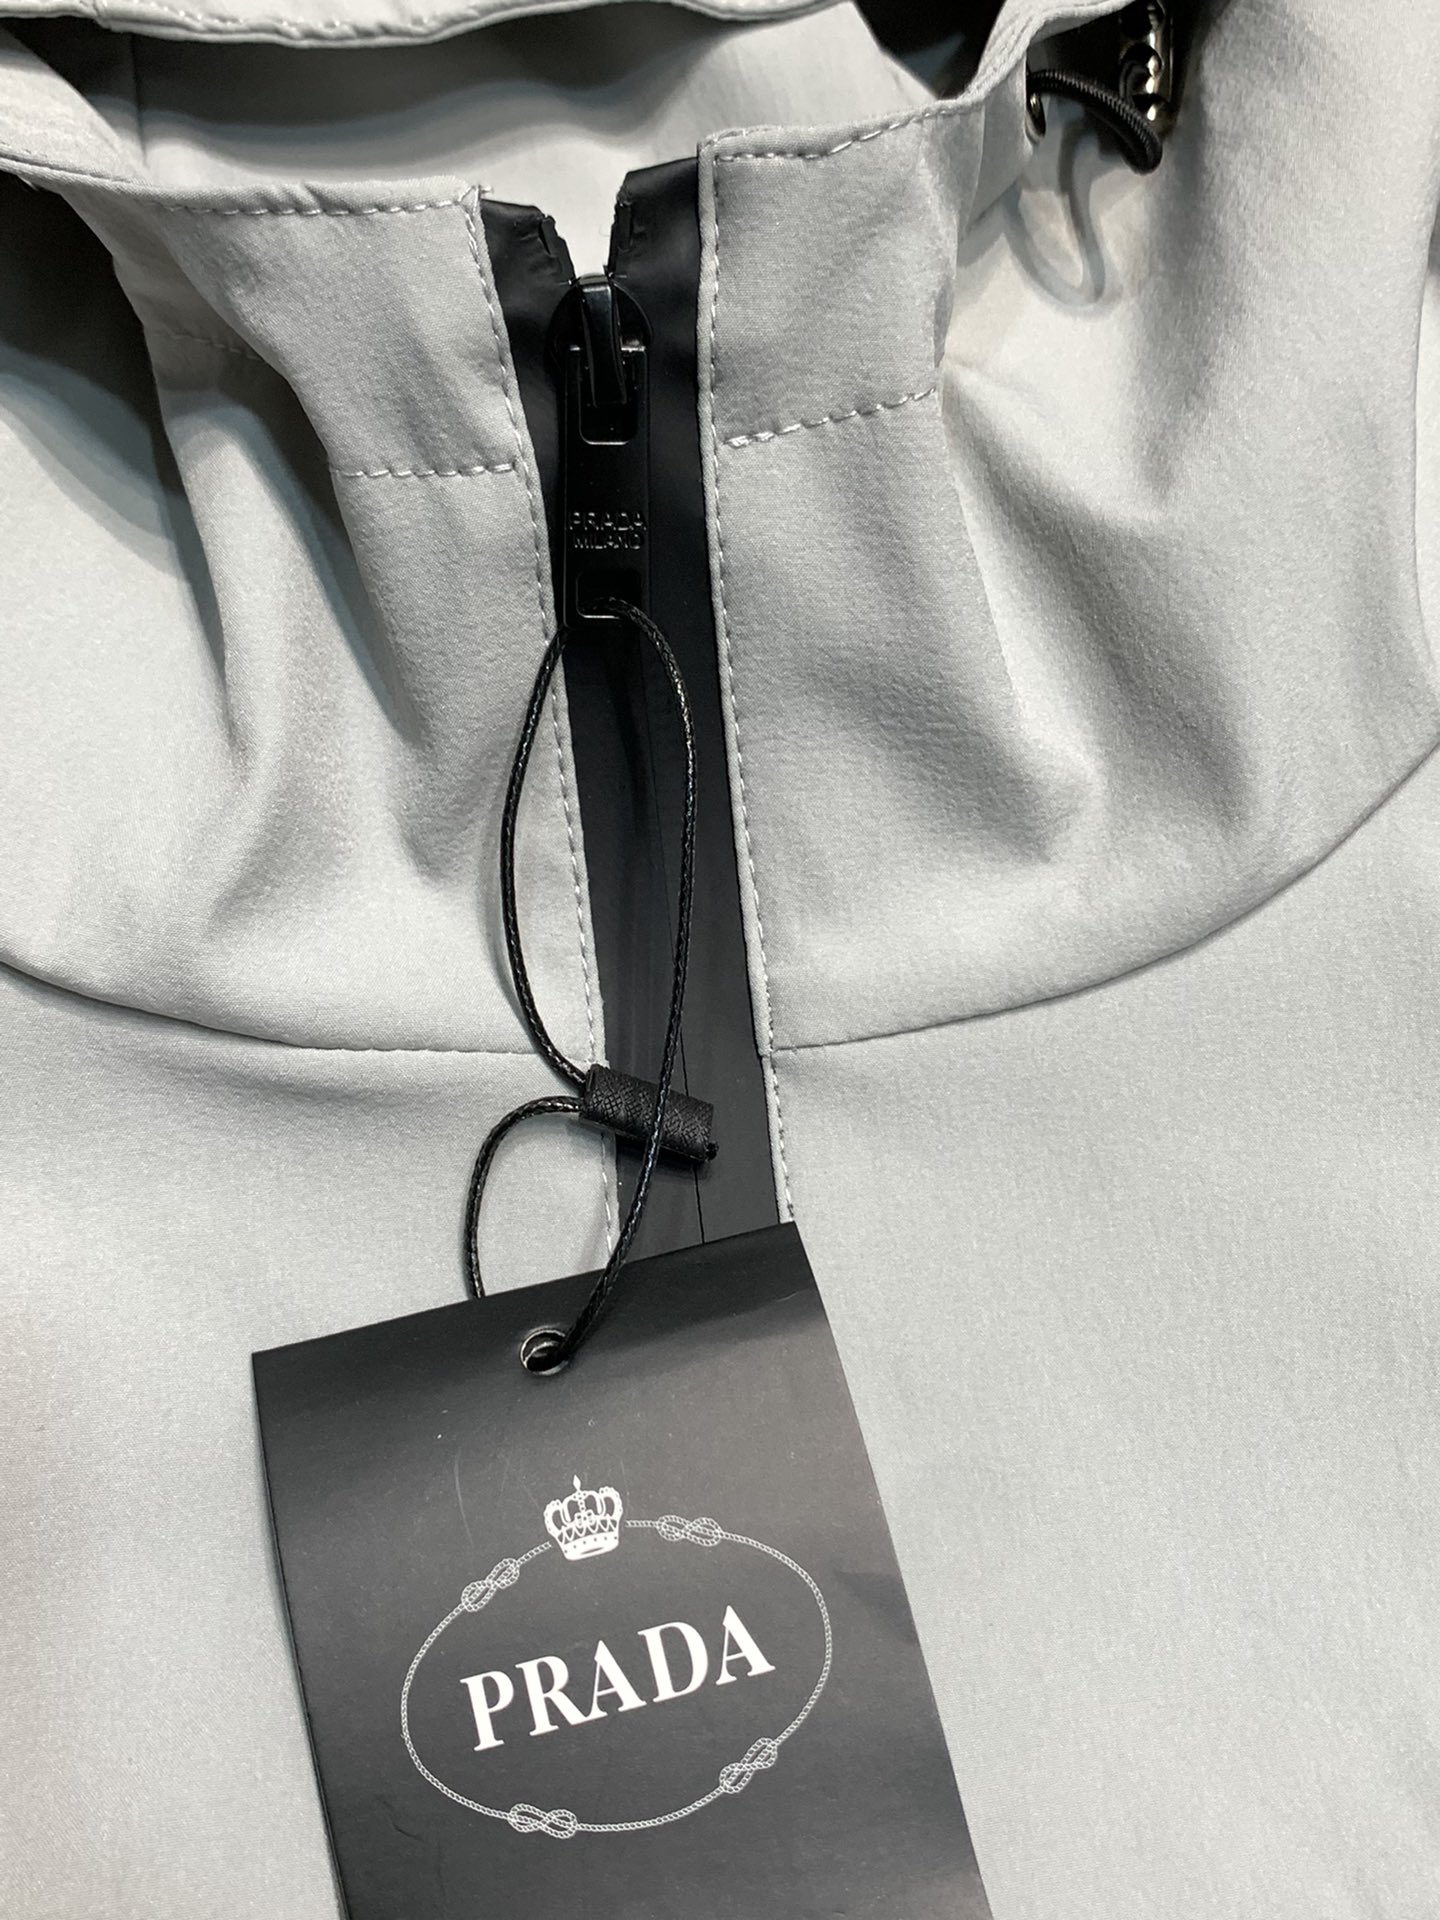 Prada普拉达独家专供最新春秋时尚连帽夹克经典设计感与颜值爆棚的外套品质更是无法挑剔品控可以直接入手不